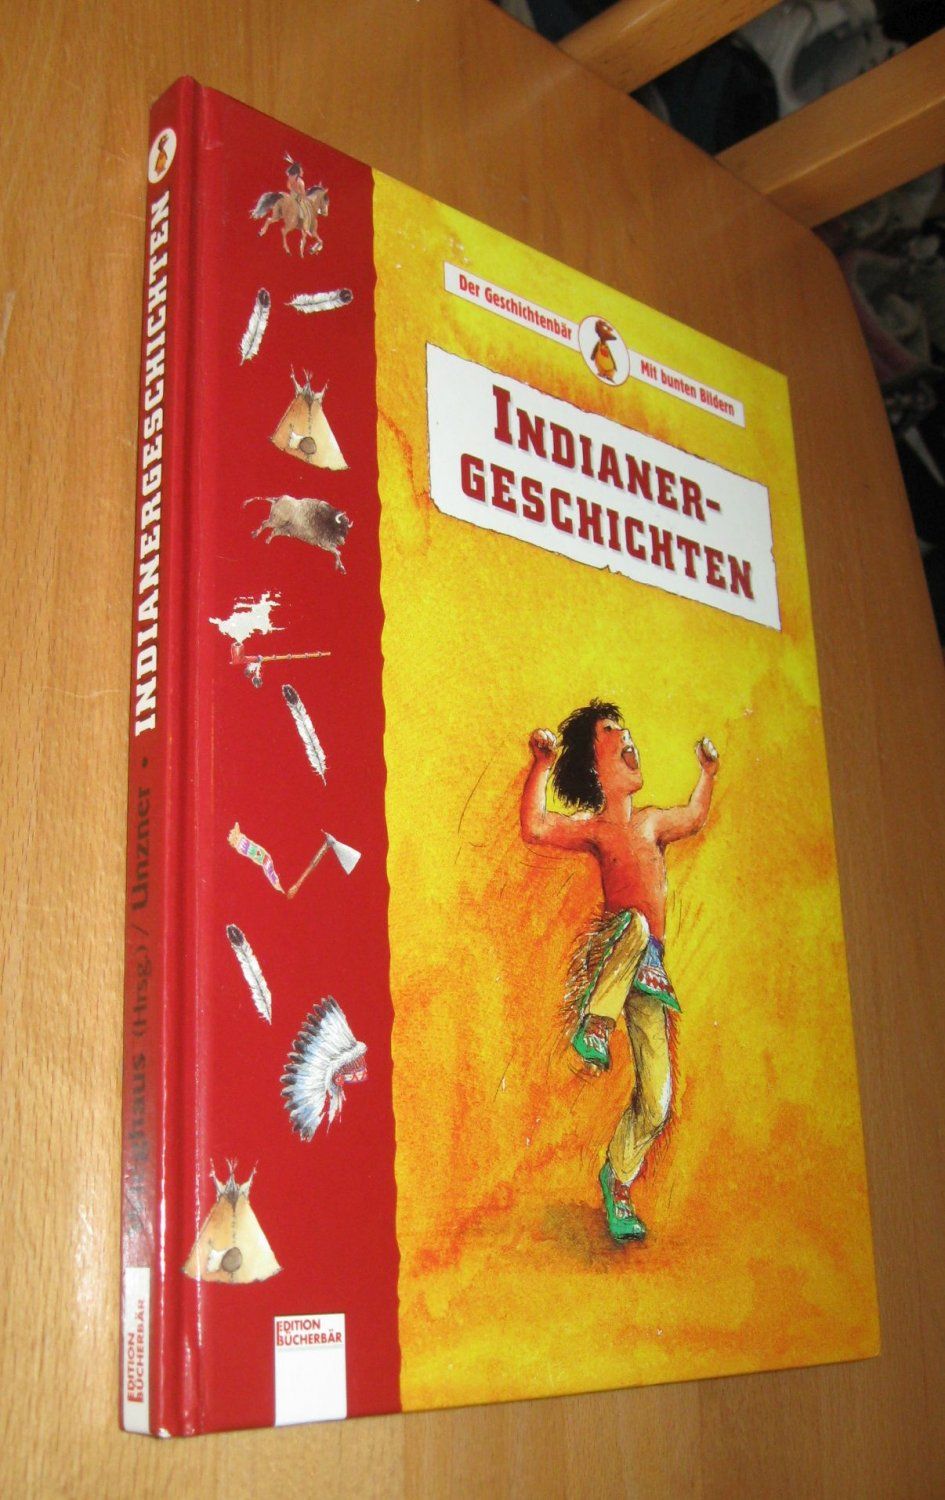 Indianergeschichten  1. Auflage - Wieghaus, Georg Unzner, Christa